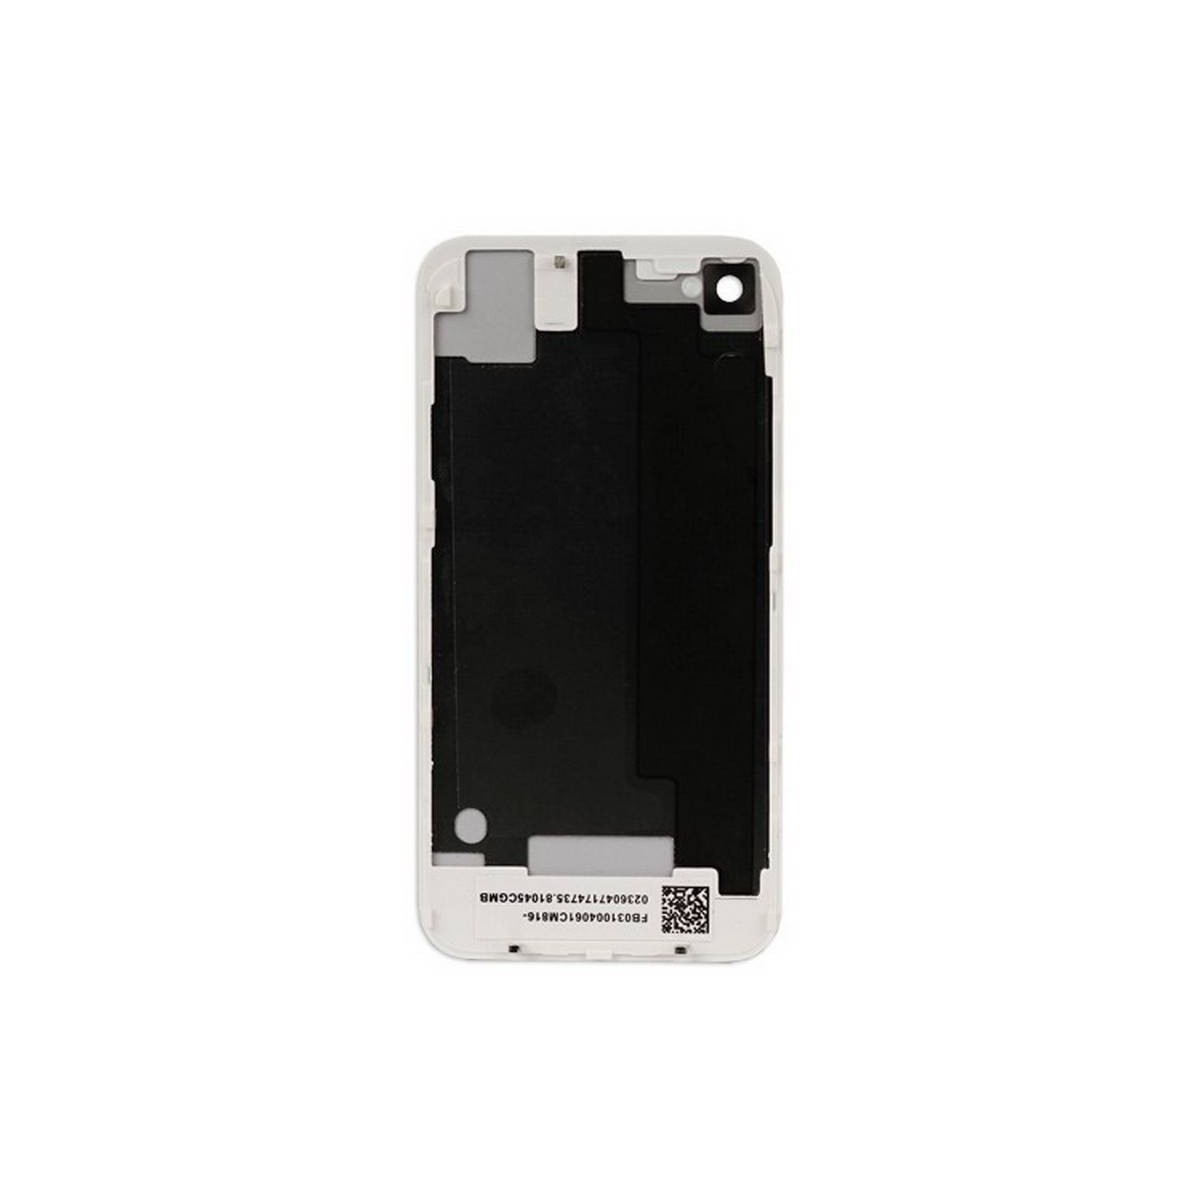 Carcasa trasera, tapa de batería blanca para iPhone 4S